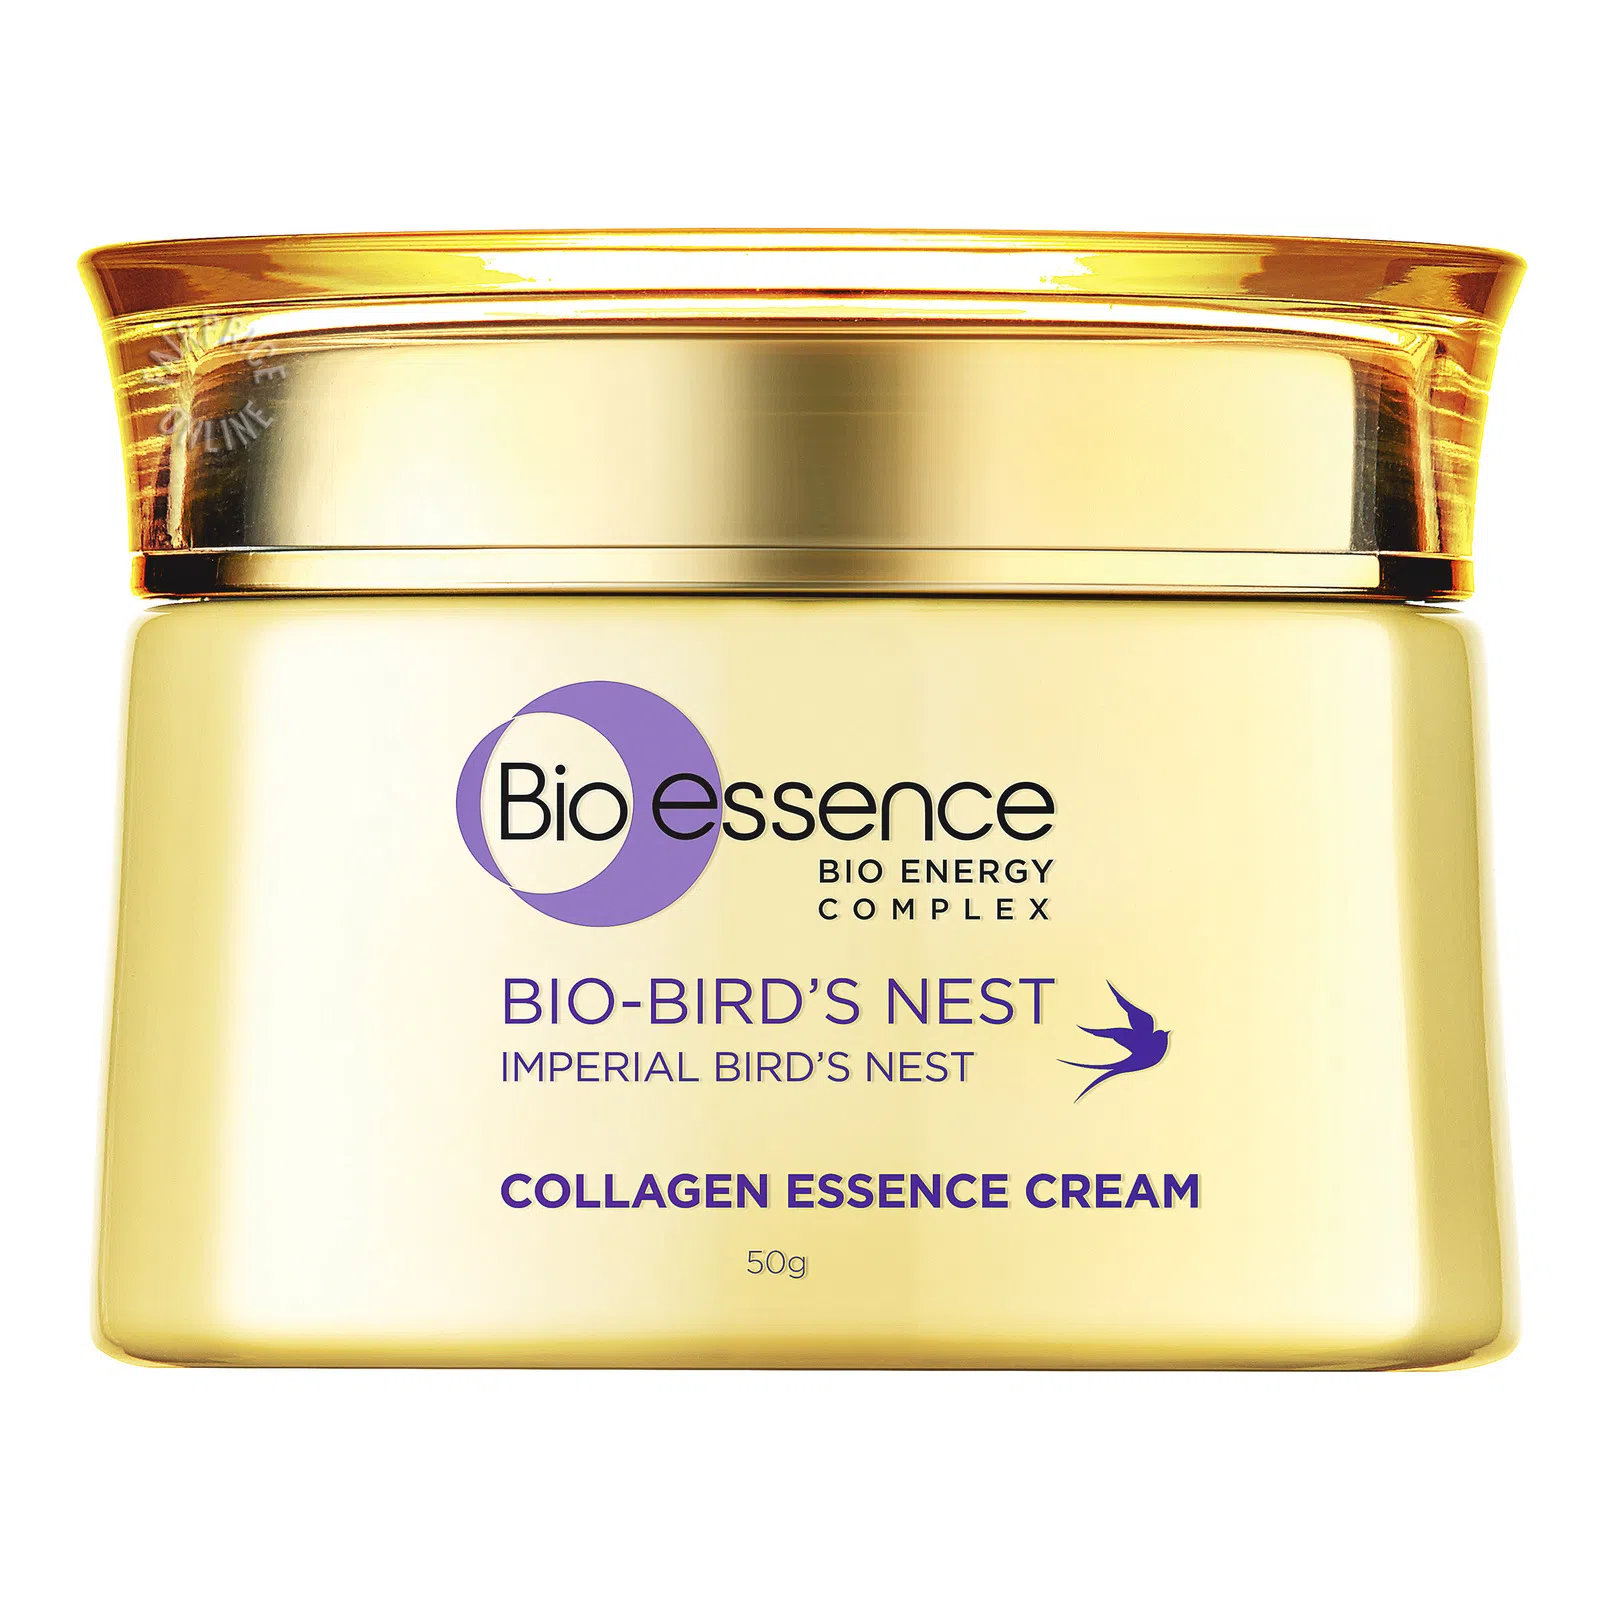 Bio Essence Bio-Bird's Nest Imperial Bird's Nest Collagen Essence Cream 50g - $47.99